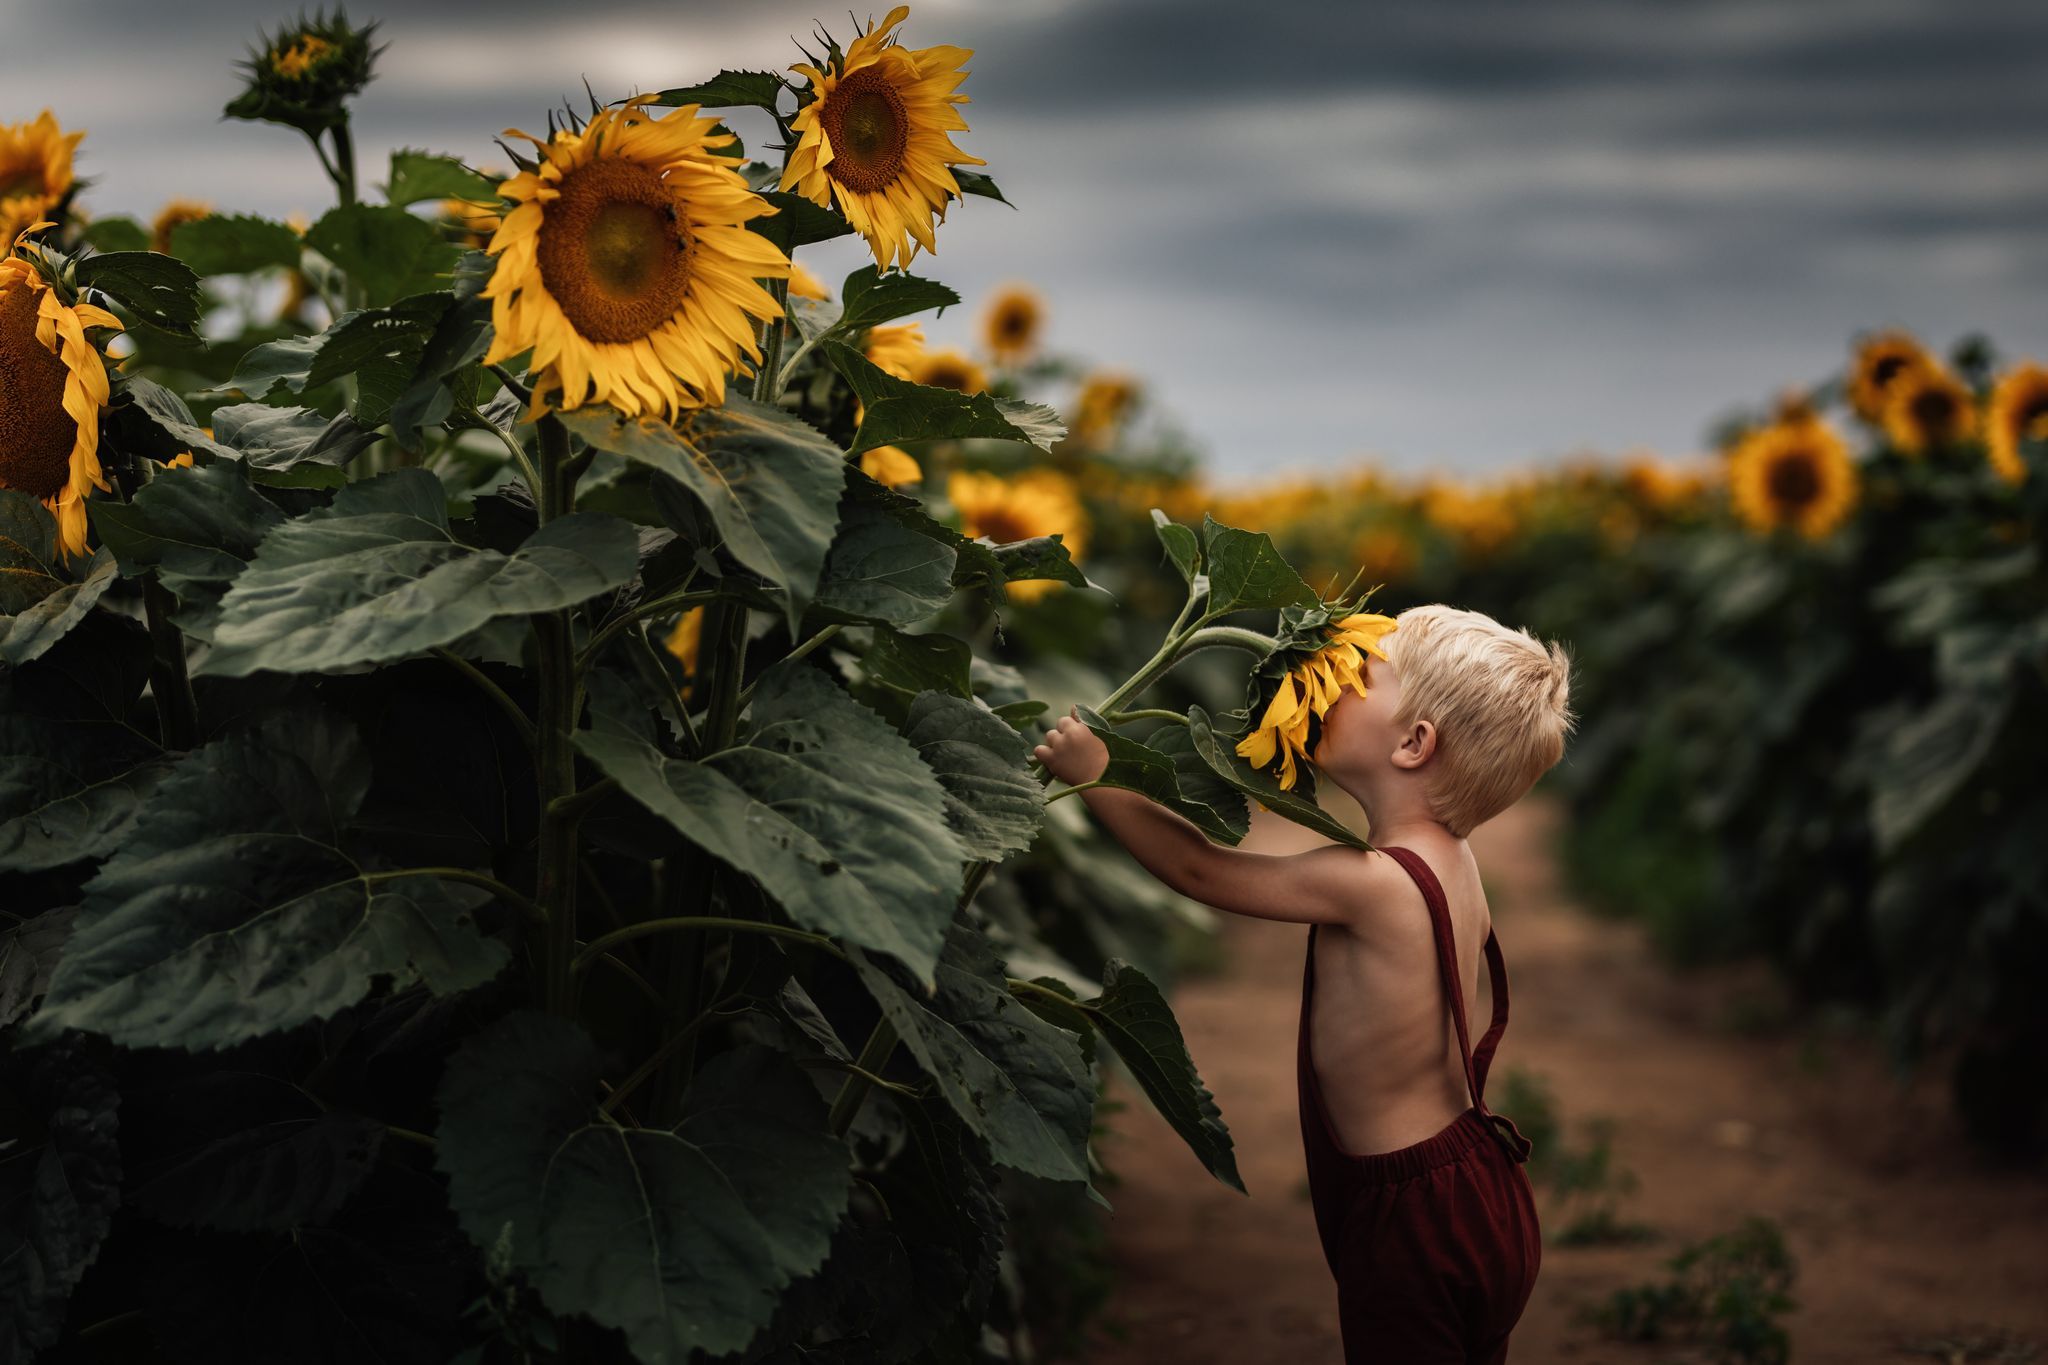 مزرعه گل آفتاب گردان در ایالت میشیگان آمریکا